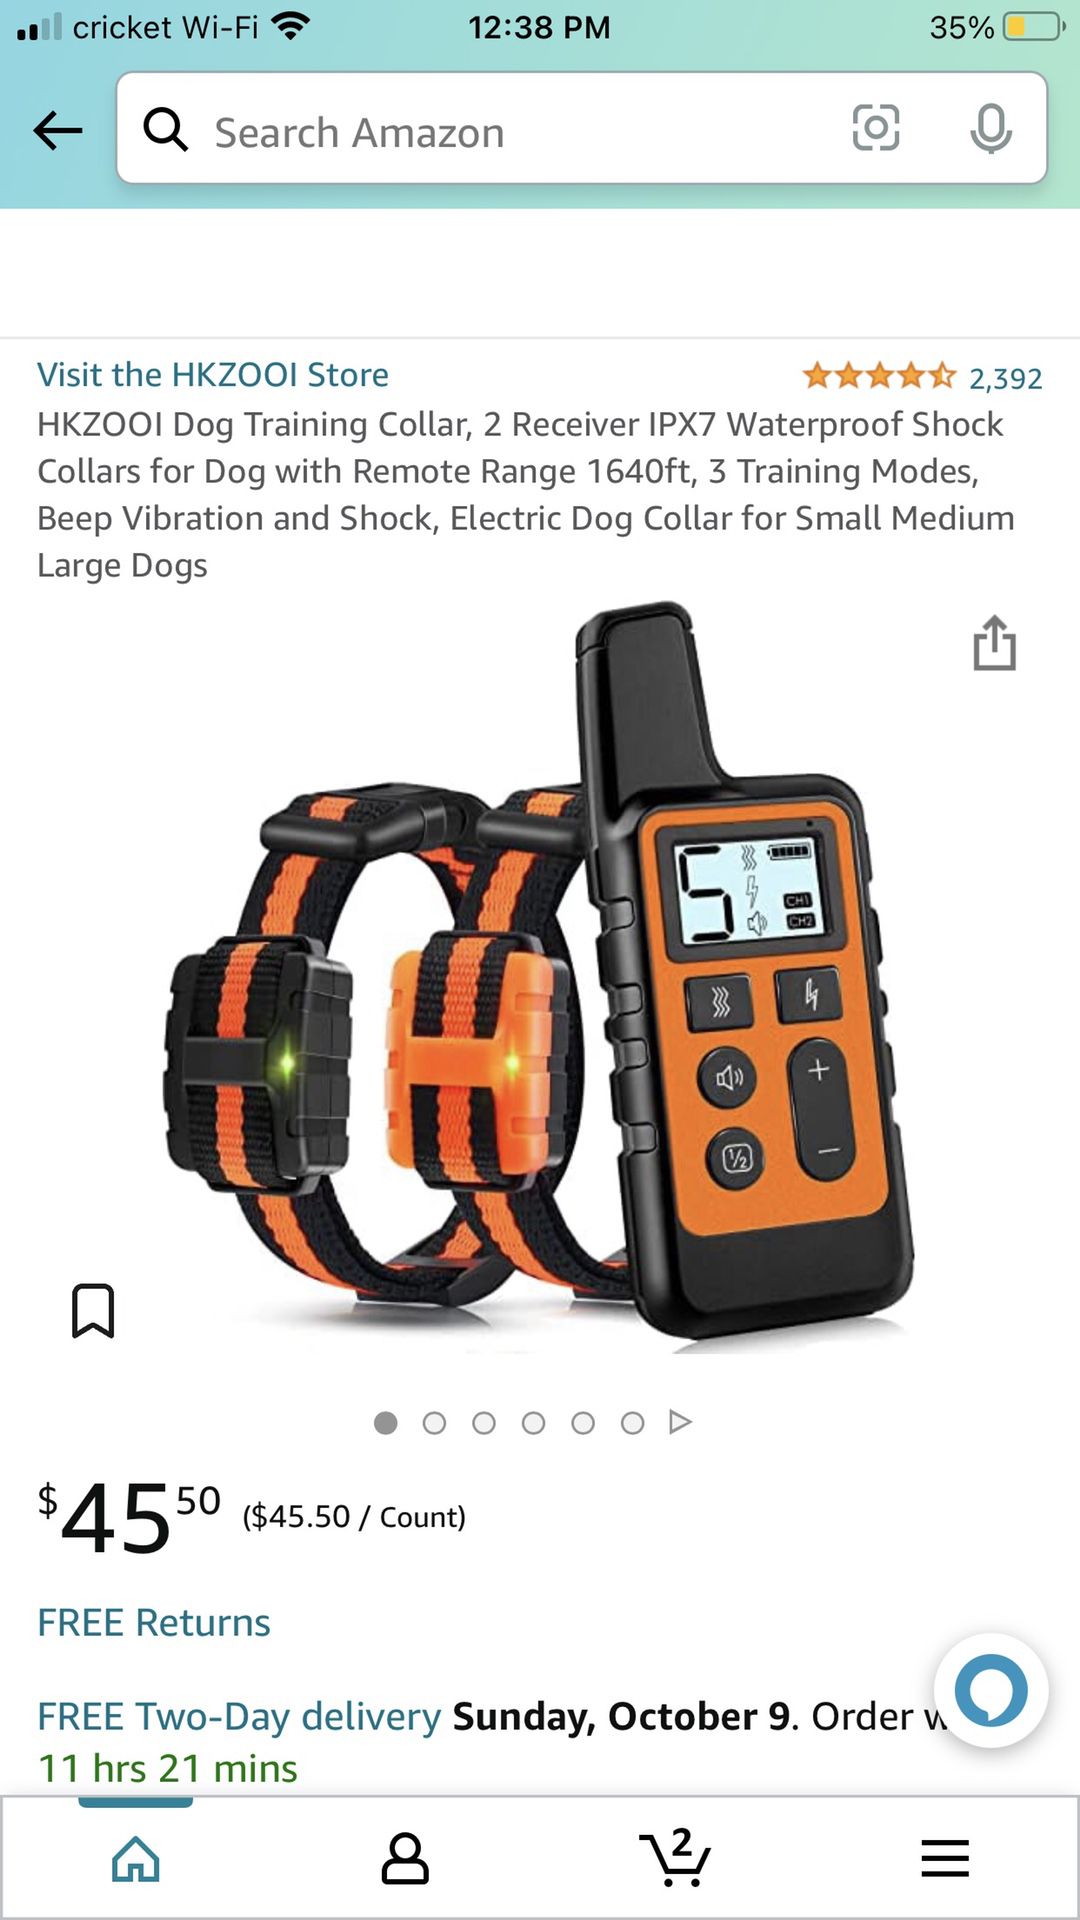 Dog Training Collar